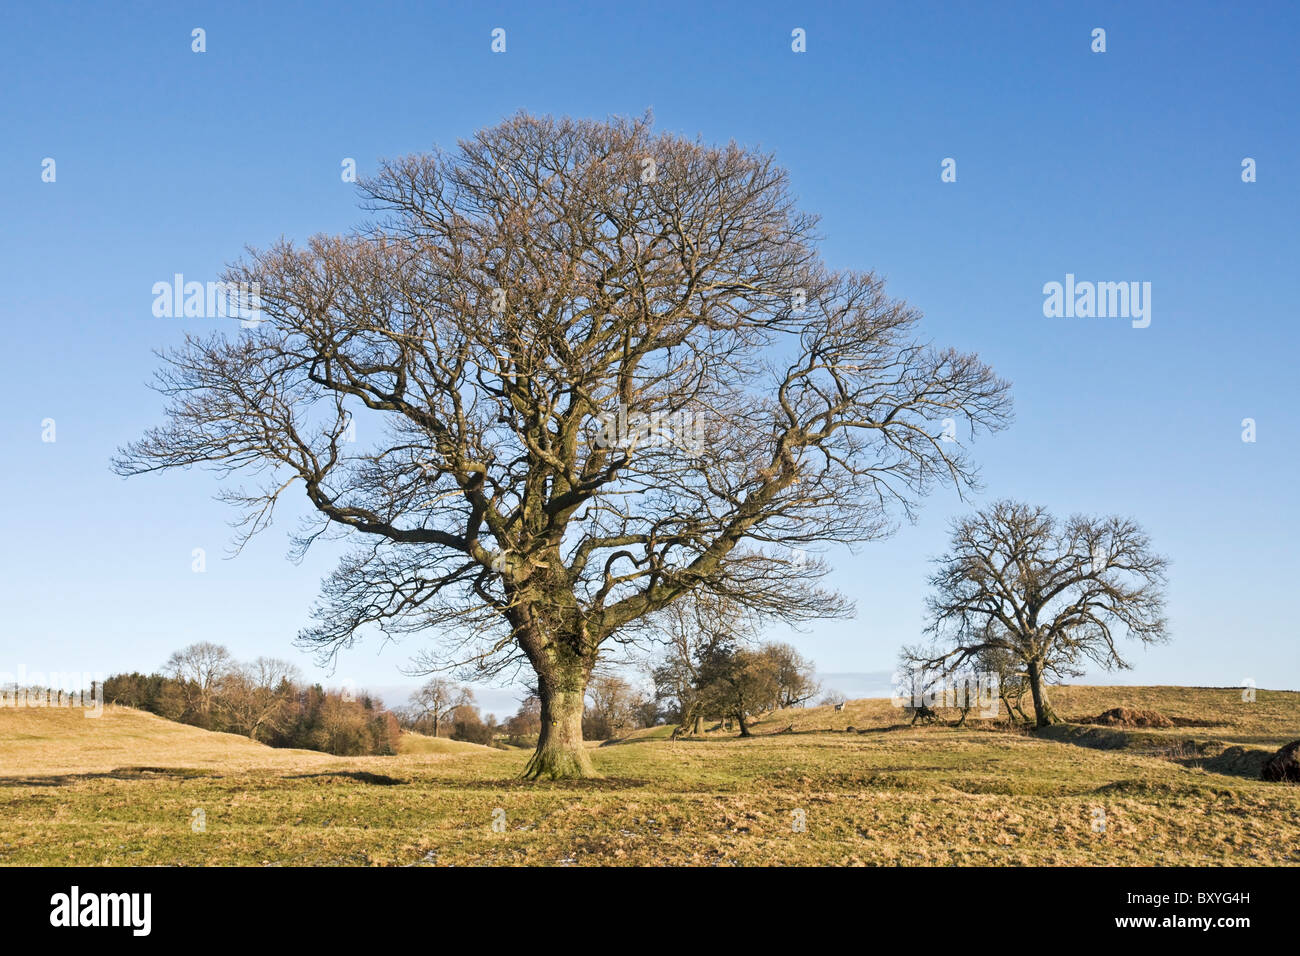 En hiver, les frênes qui poussent sur les terres de pâturages des hautes terres dans le Yorkshire du Nord. Banque D'Images